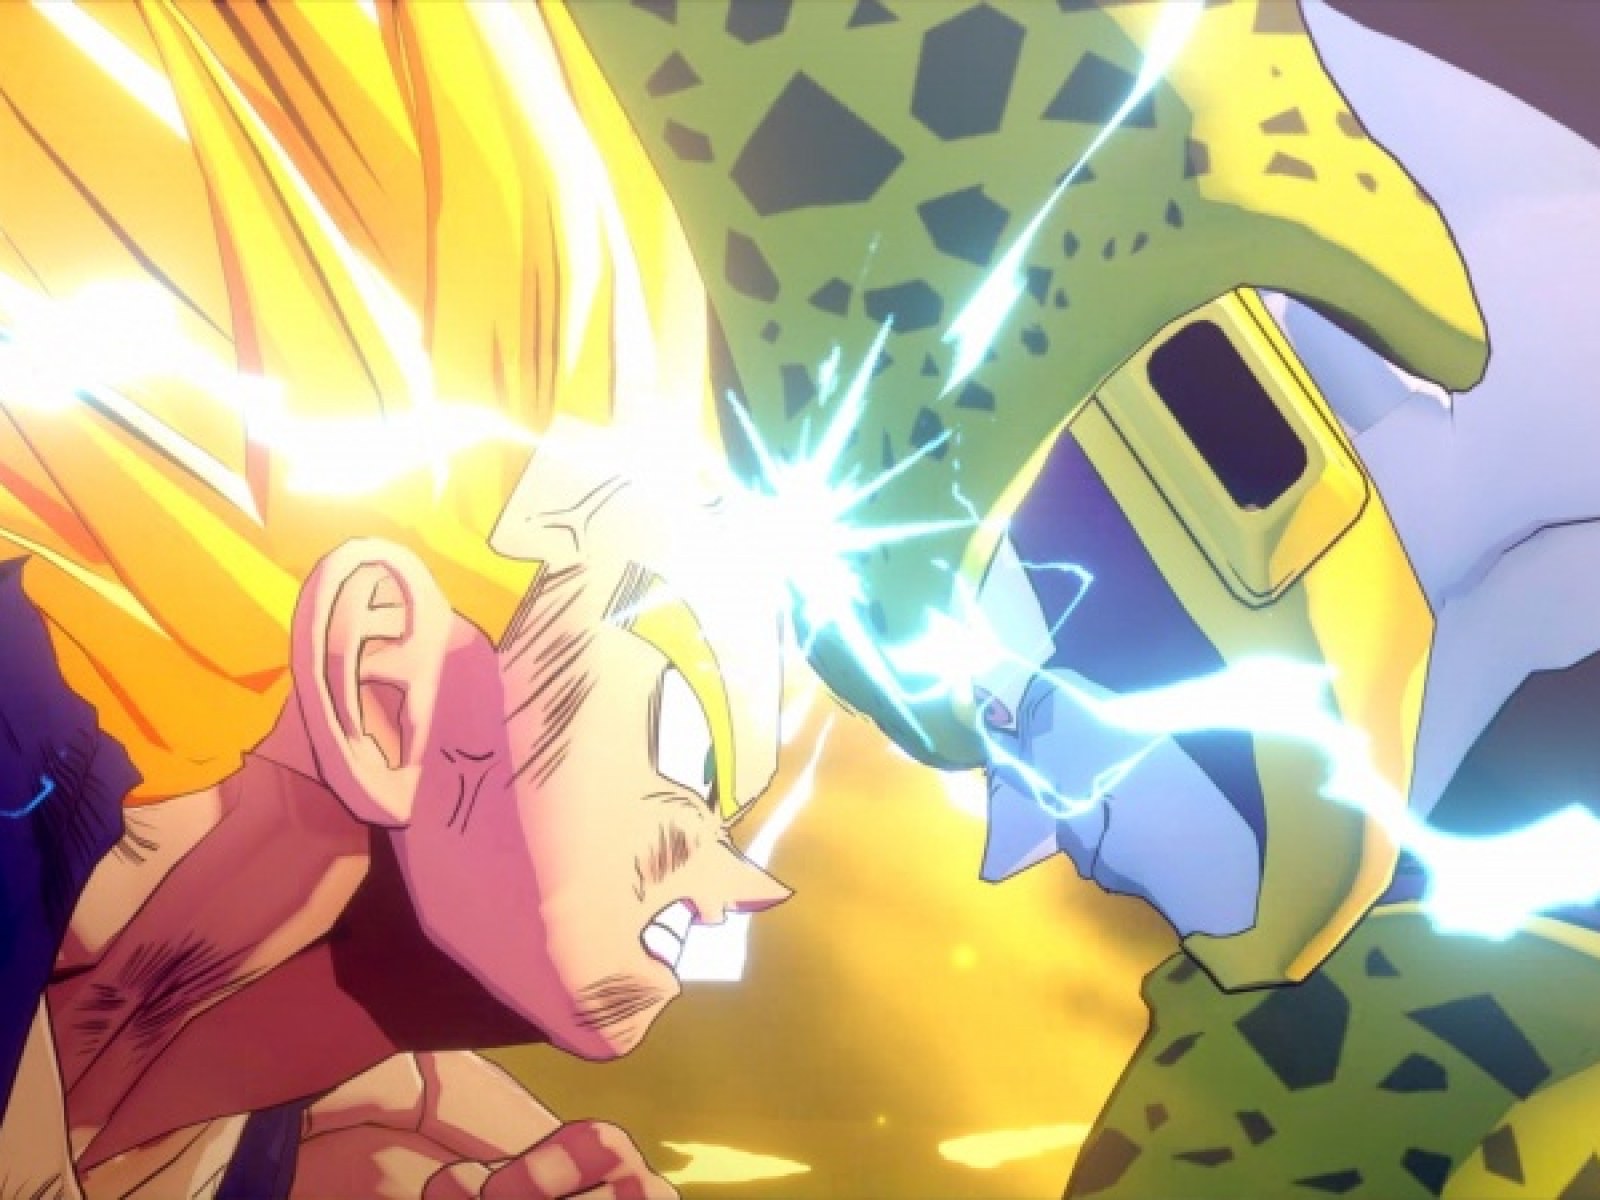 Dragon Ball Z Kakarot Trailer Shows Gohan Gameplay And Cell Saga